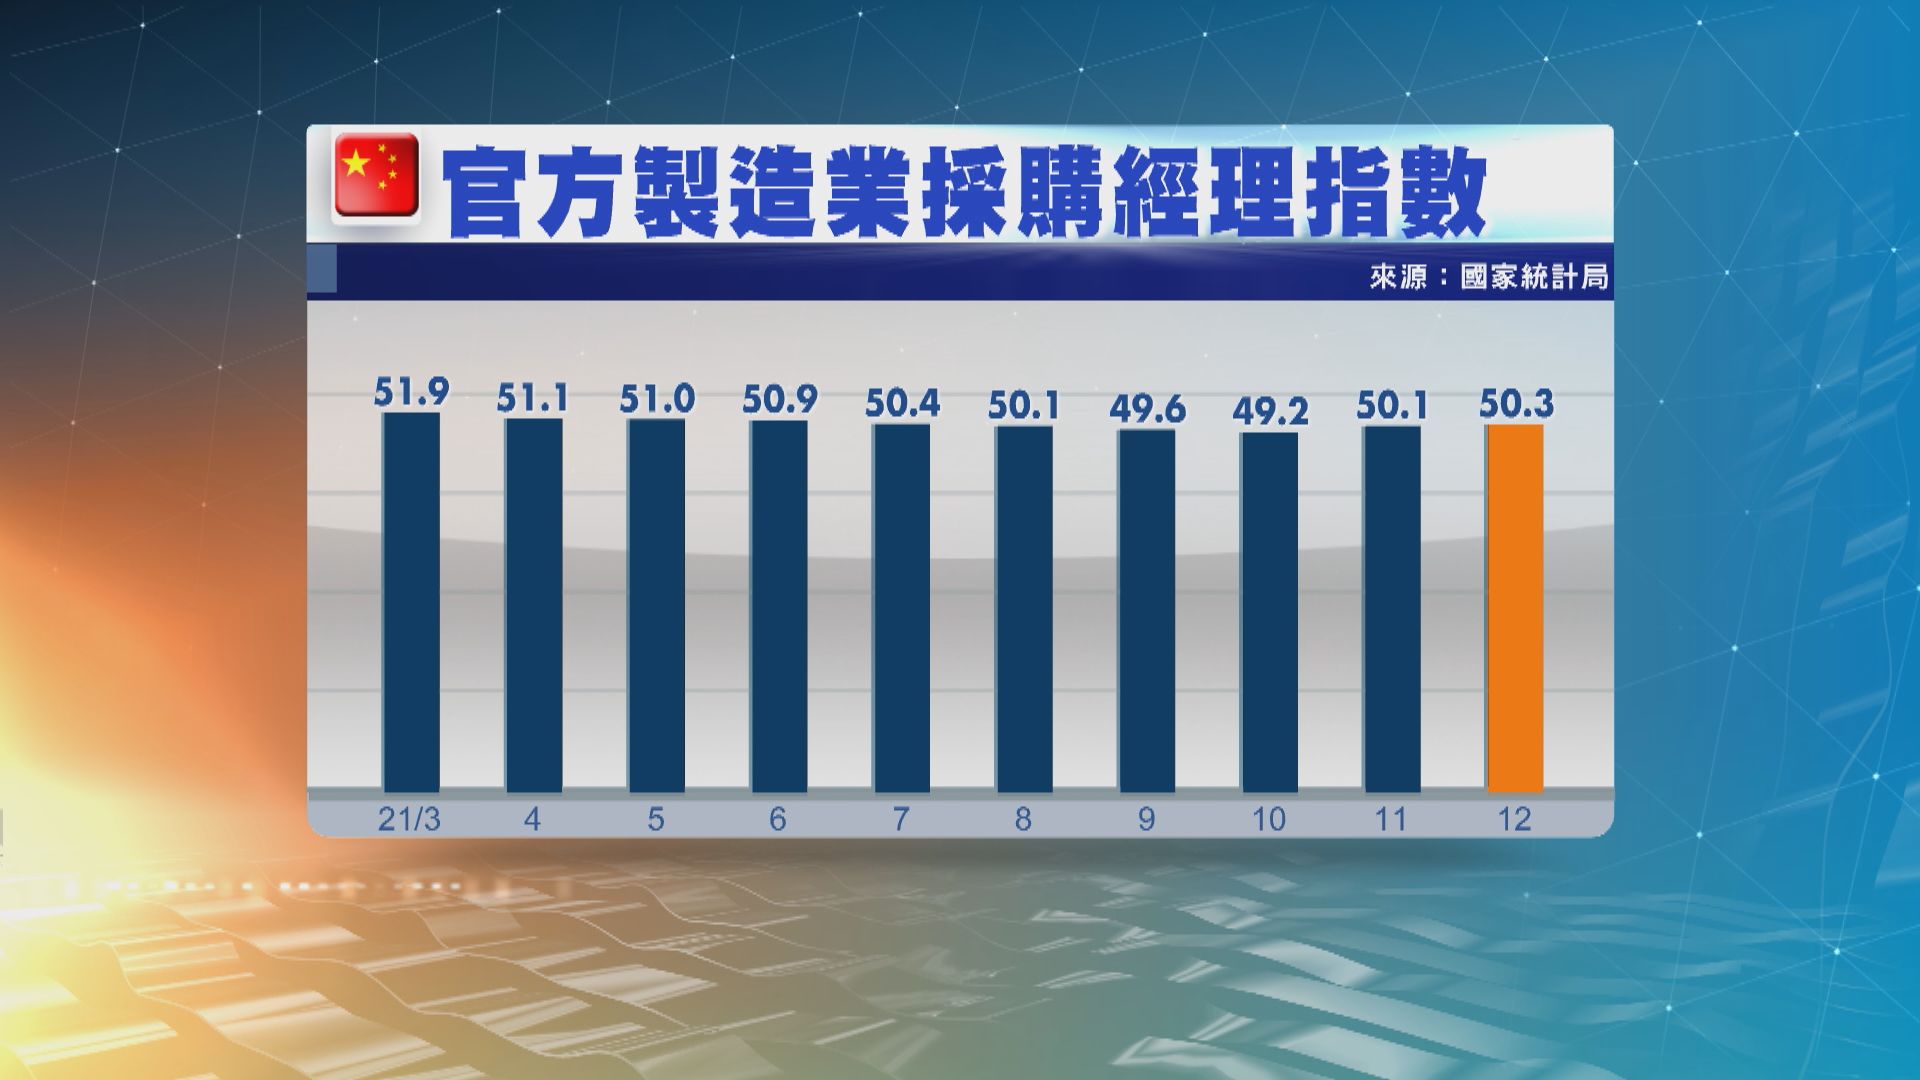 【兩連升】中國12月官方製造業PMI升至50.3　見五個月新高 